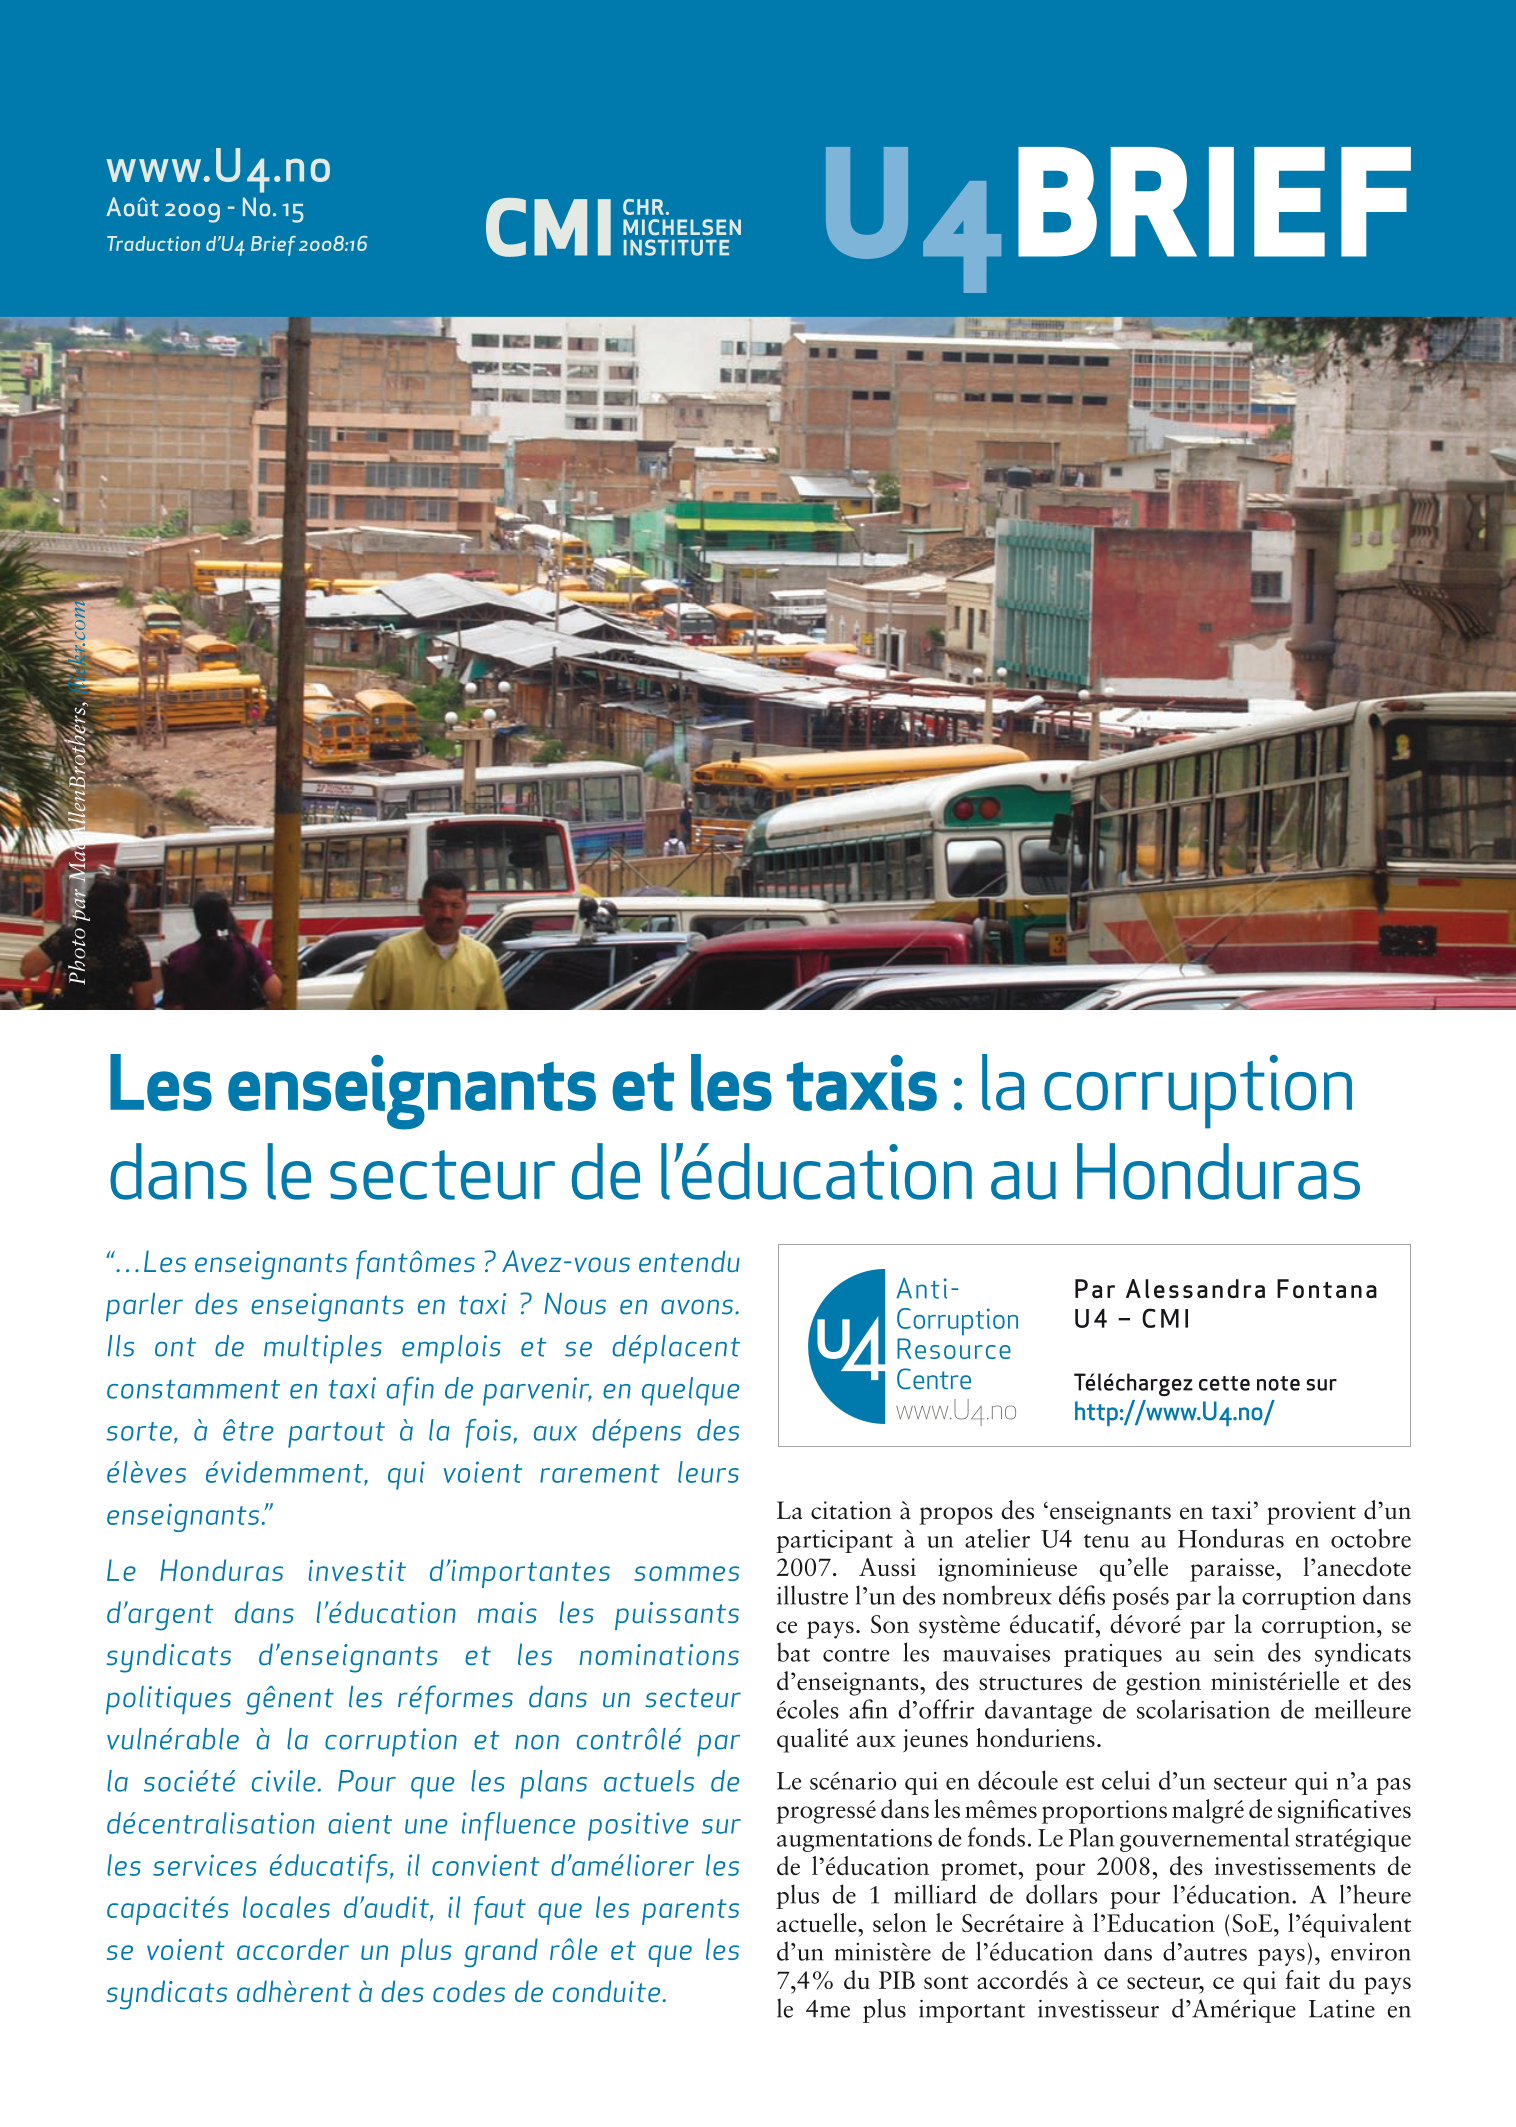 Les enseignants et les taxis : la corruption dans le secteur de l'éducation au Honduras